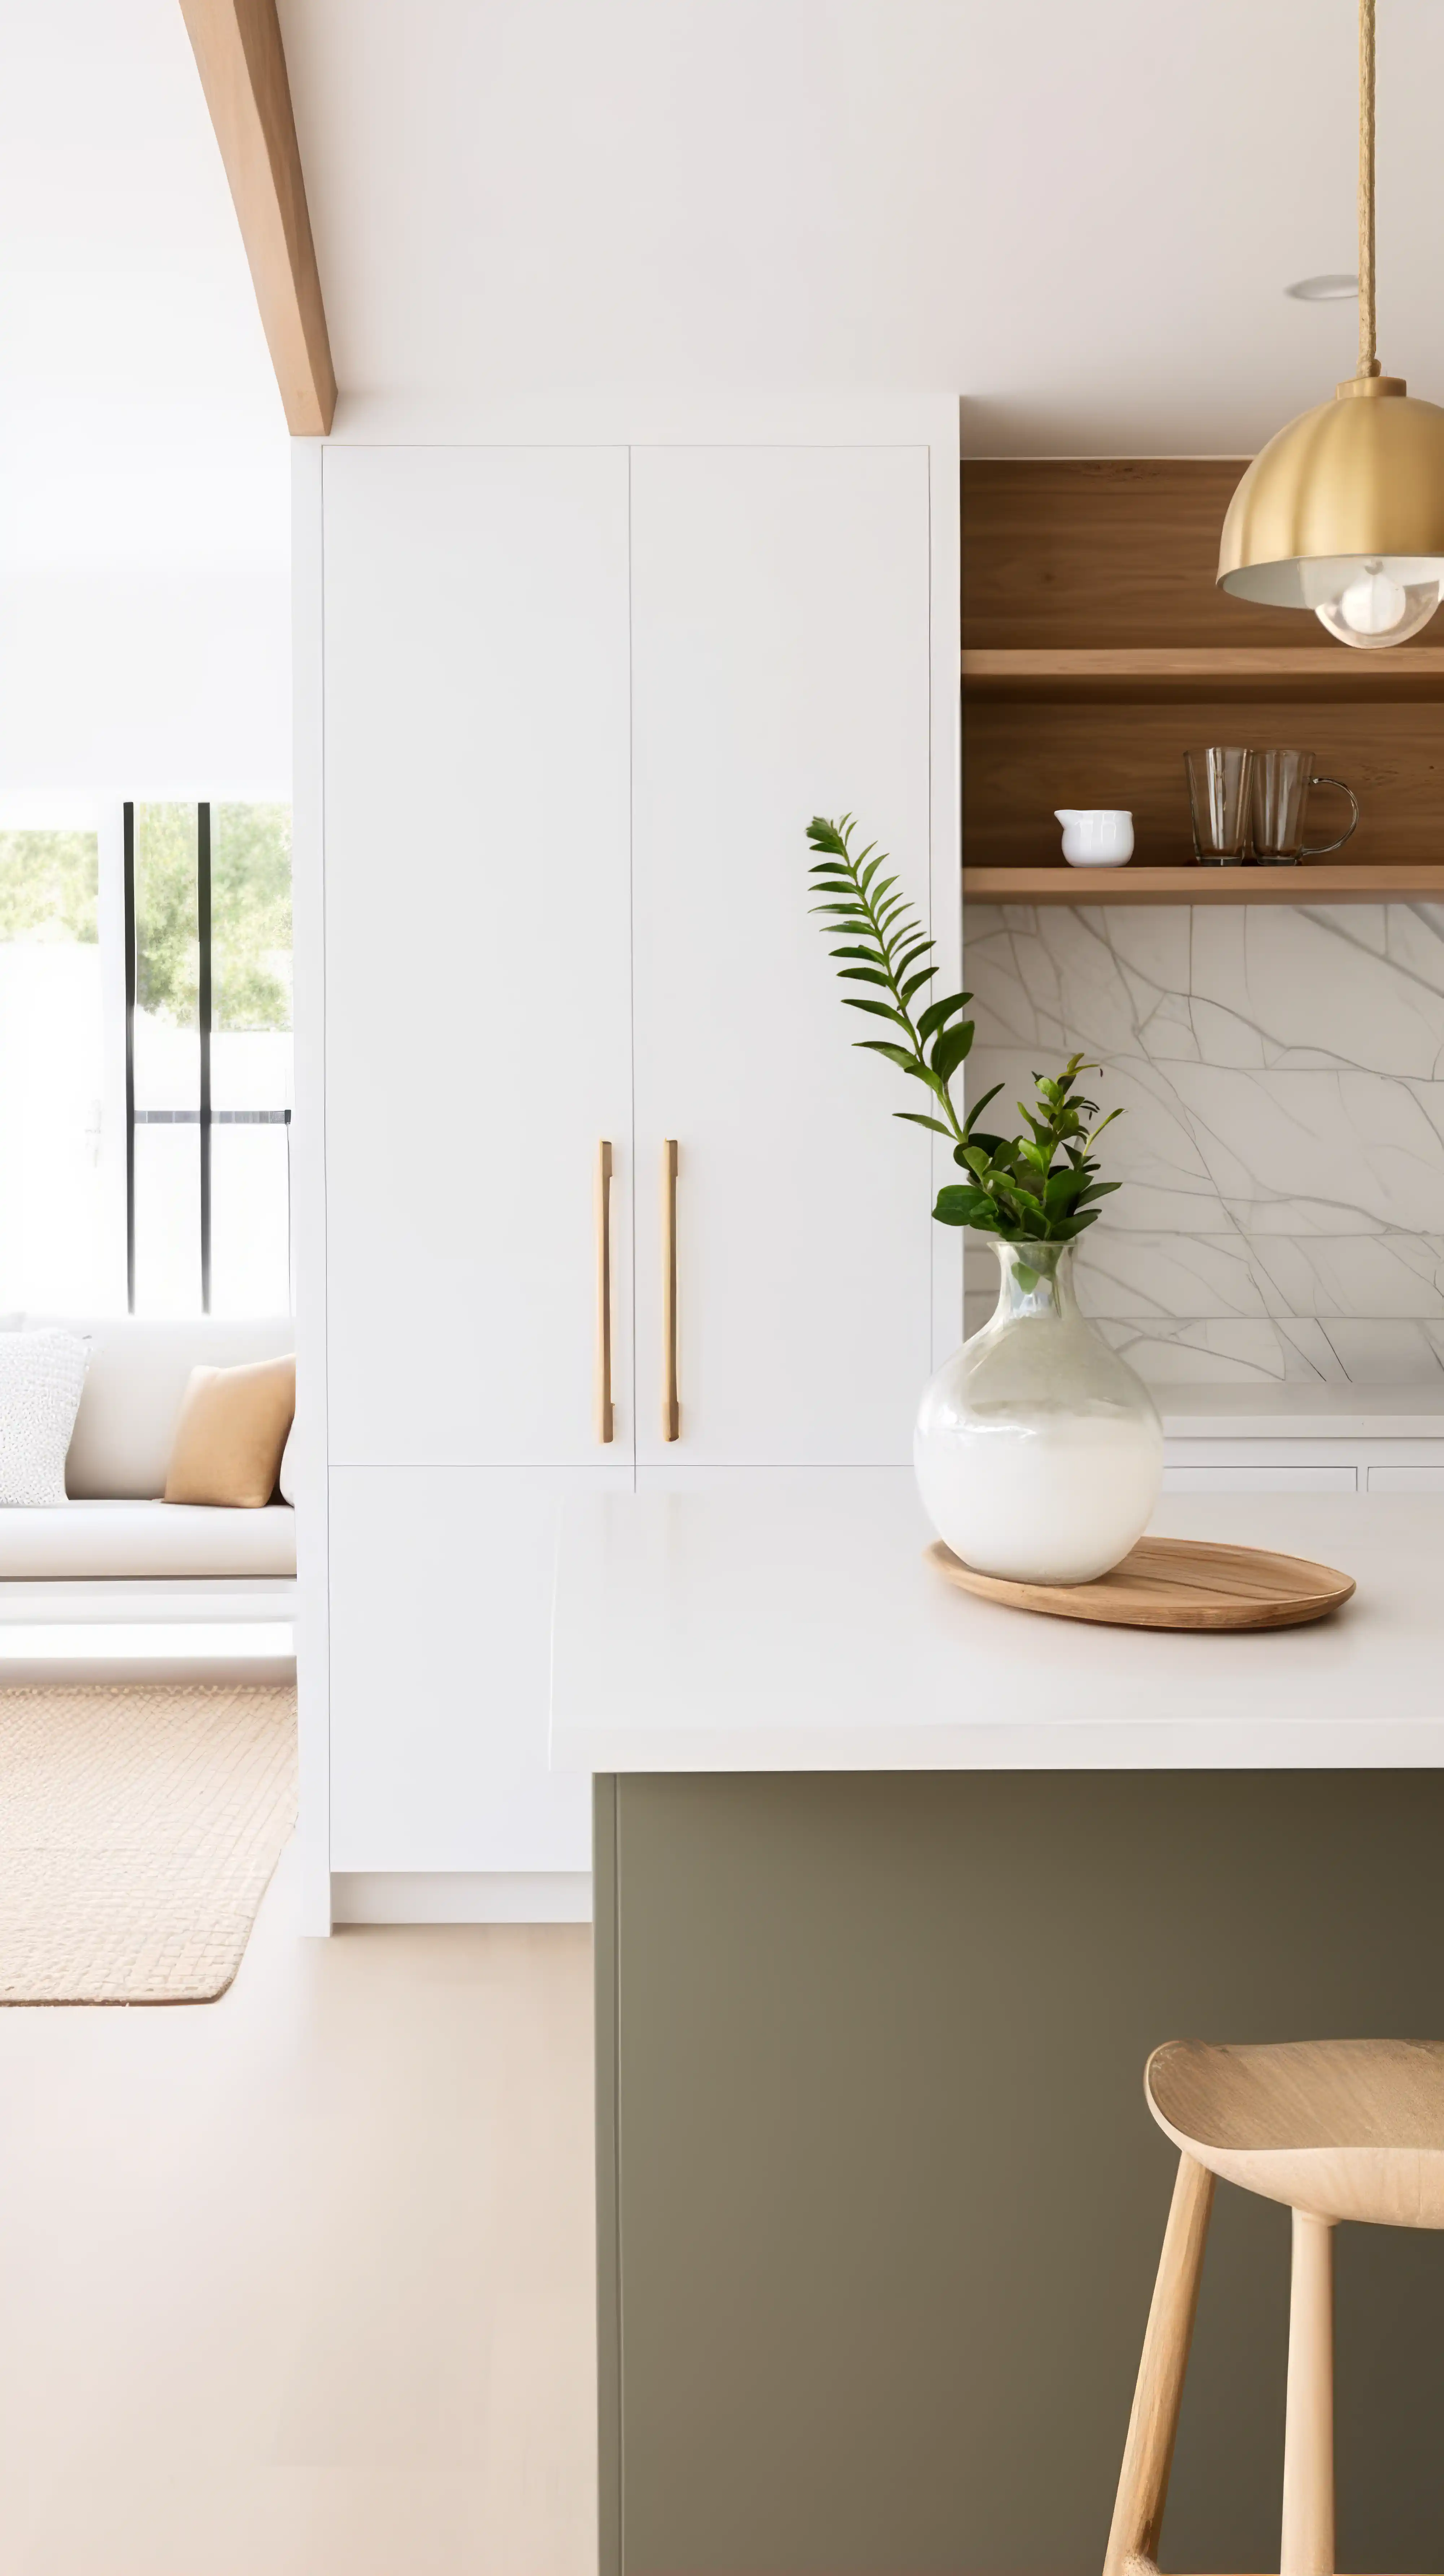 Une cuisine moderne avec un îlot blanc, un tabouret en bois et une plante dans un vase, intérieur signé Sarah Brown Design